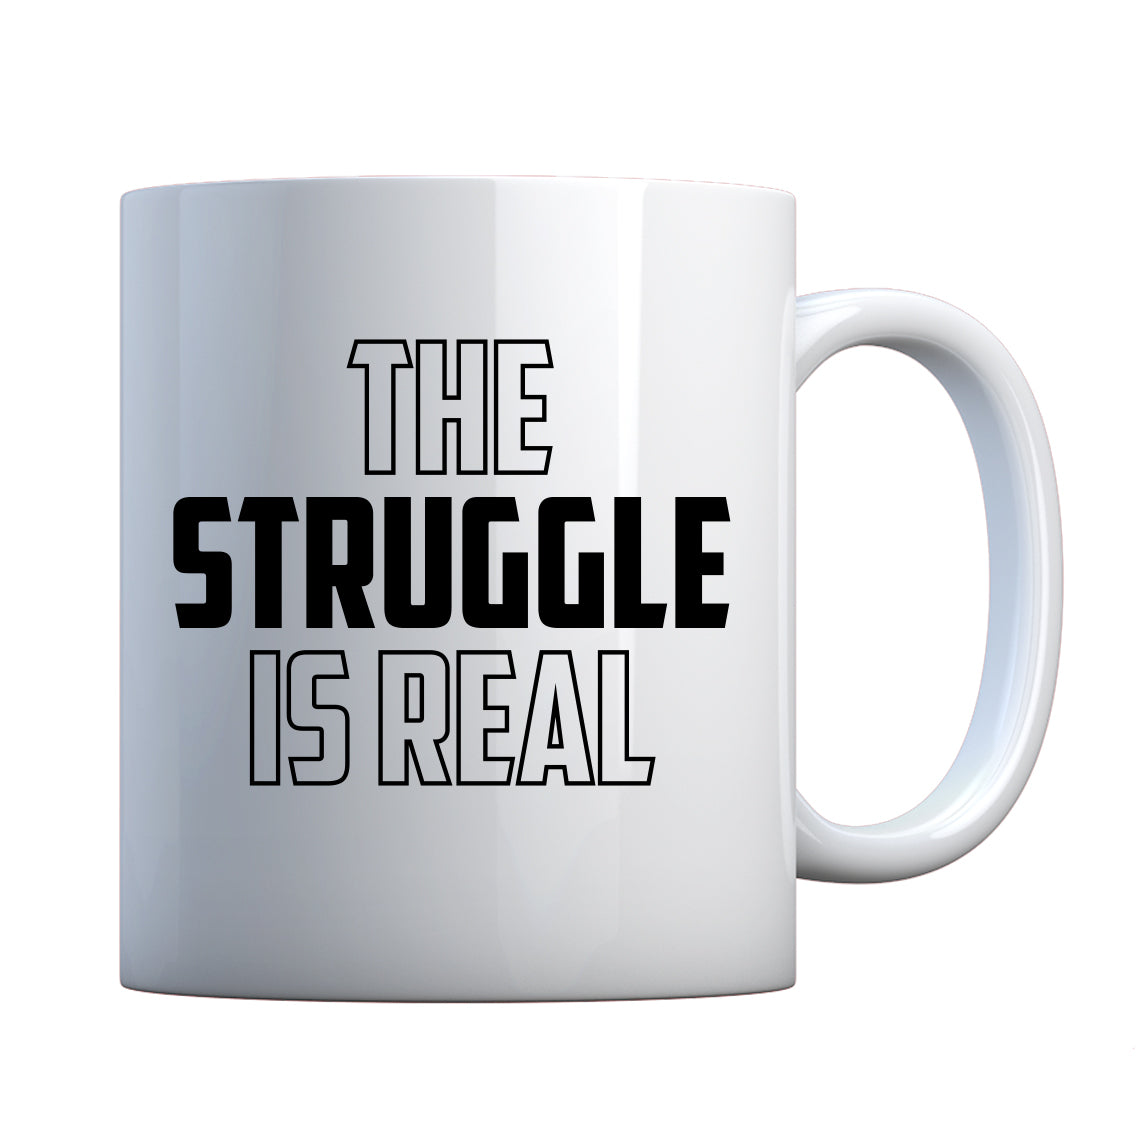 Mug The Struggle is Real Ceramic Gift Mug